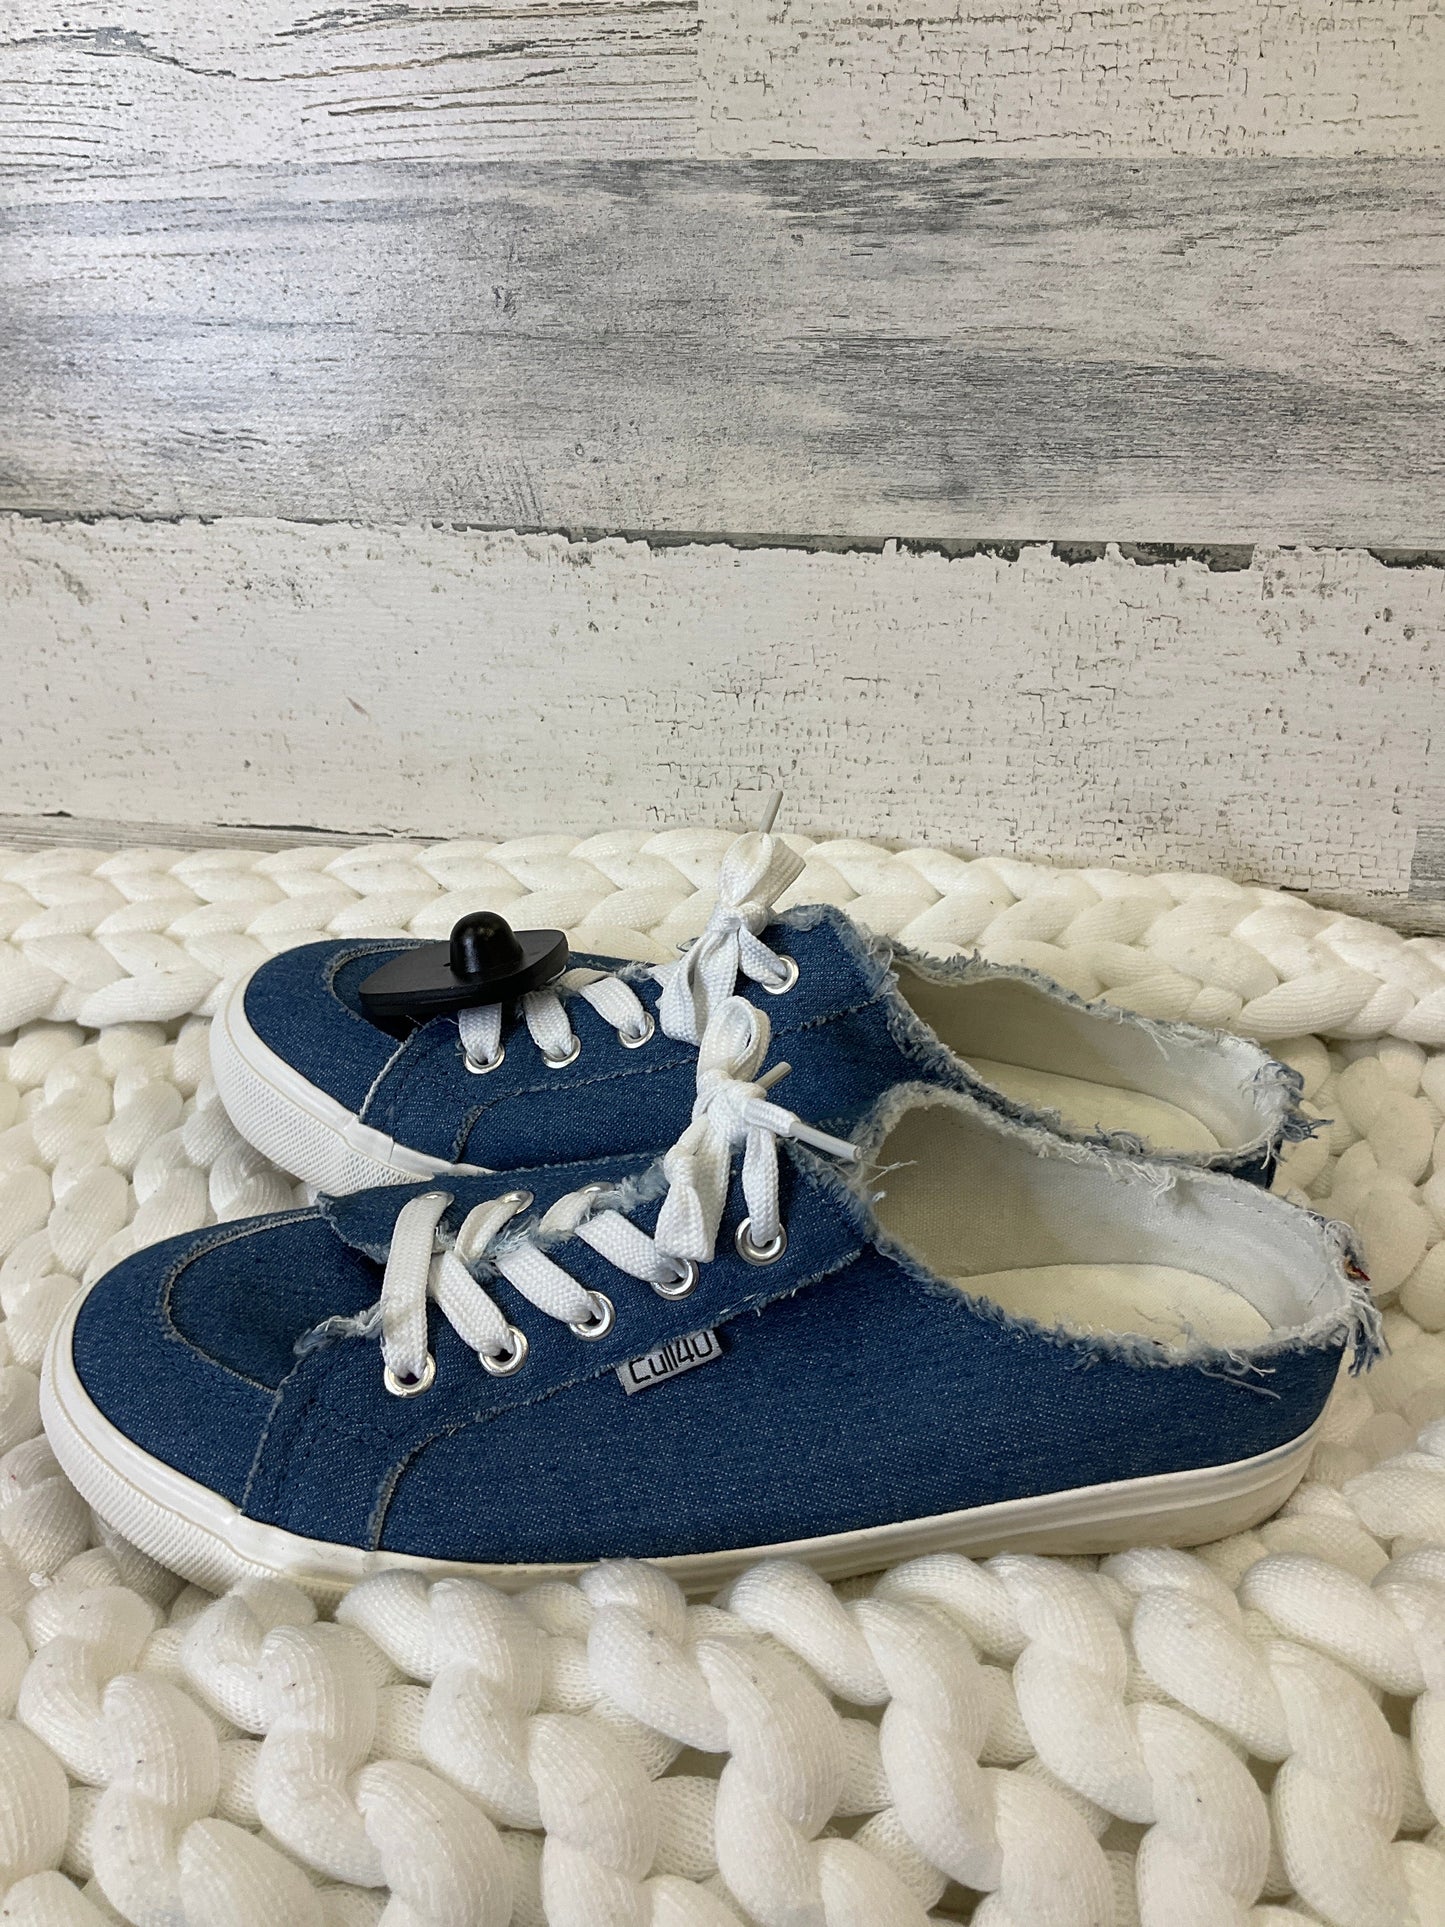 Blue Denim Shoes Athletic Clothes Mentor, Size 8